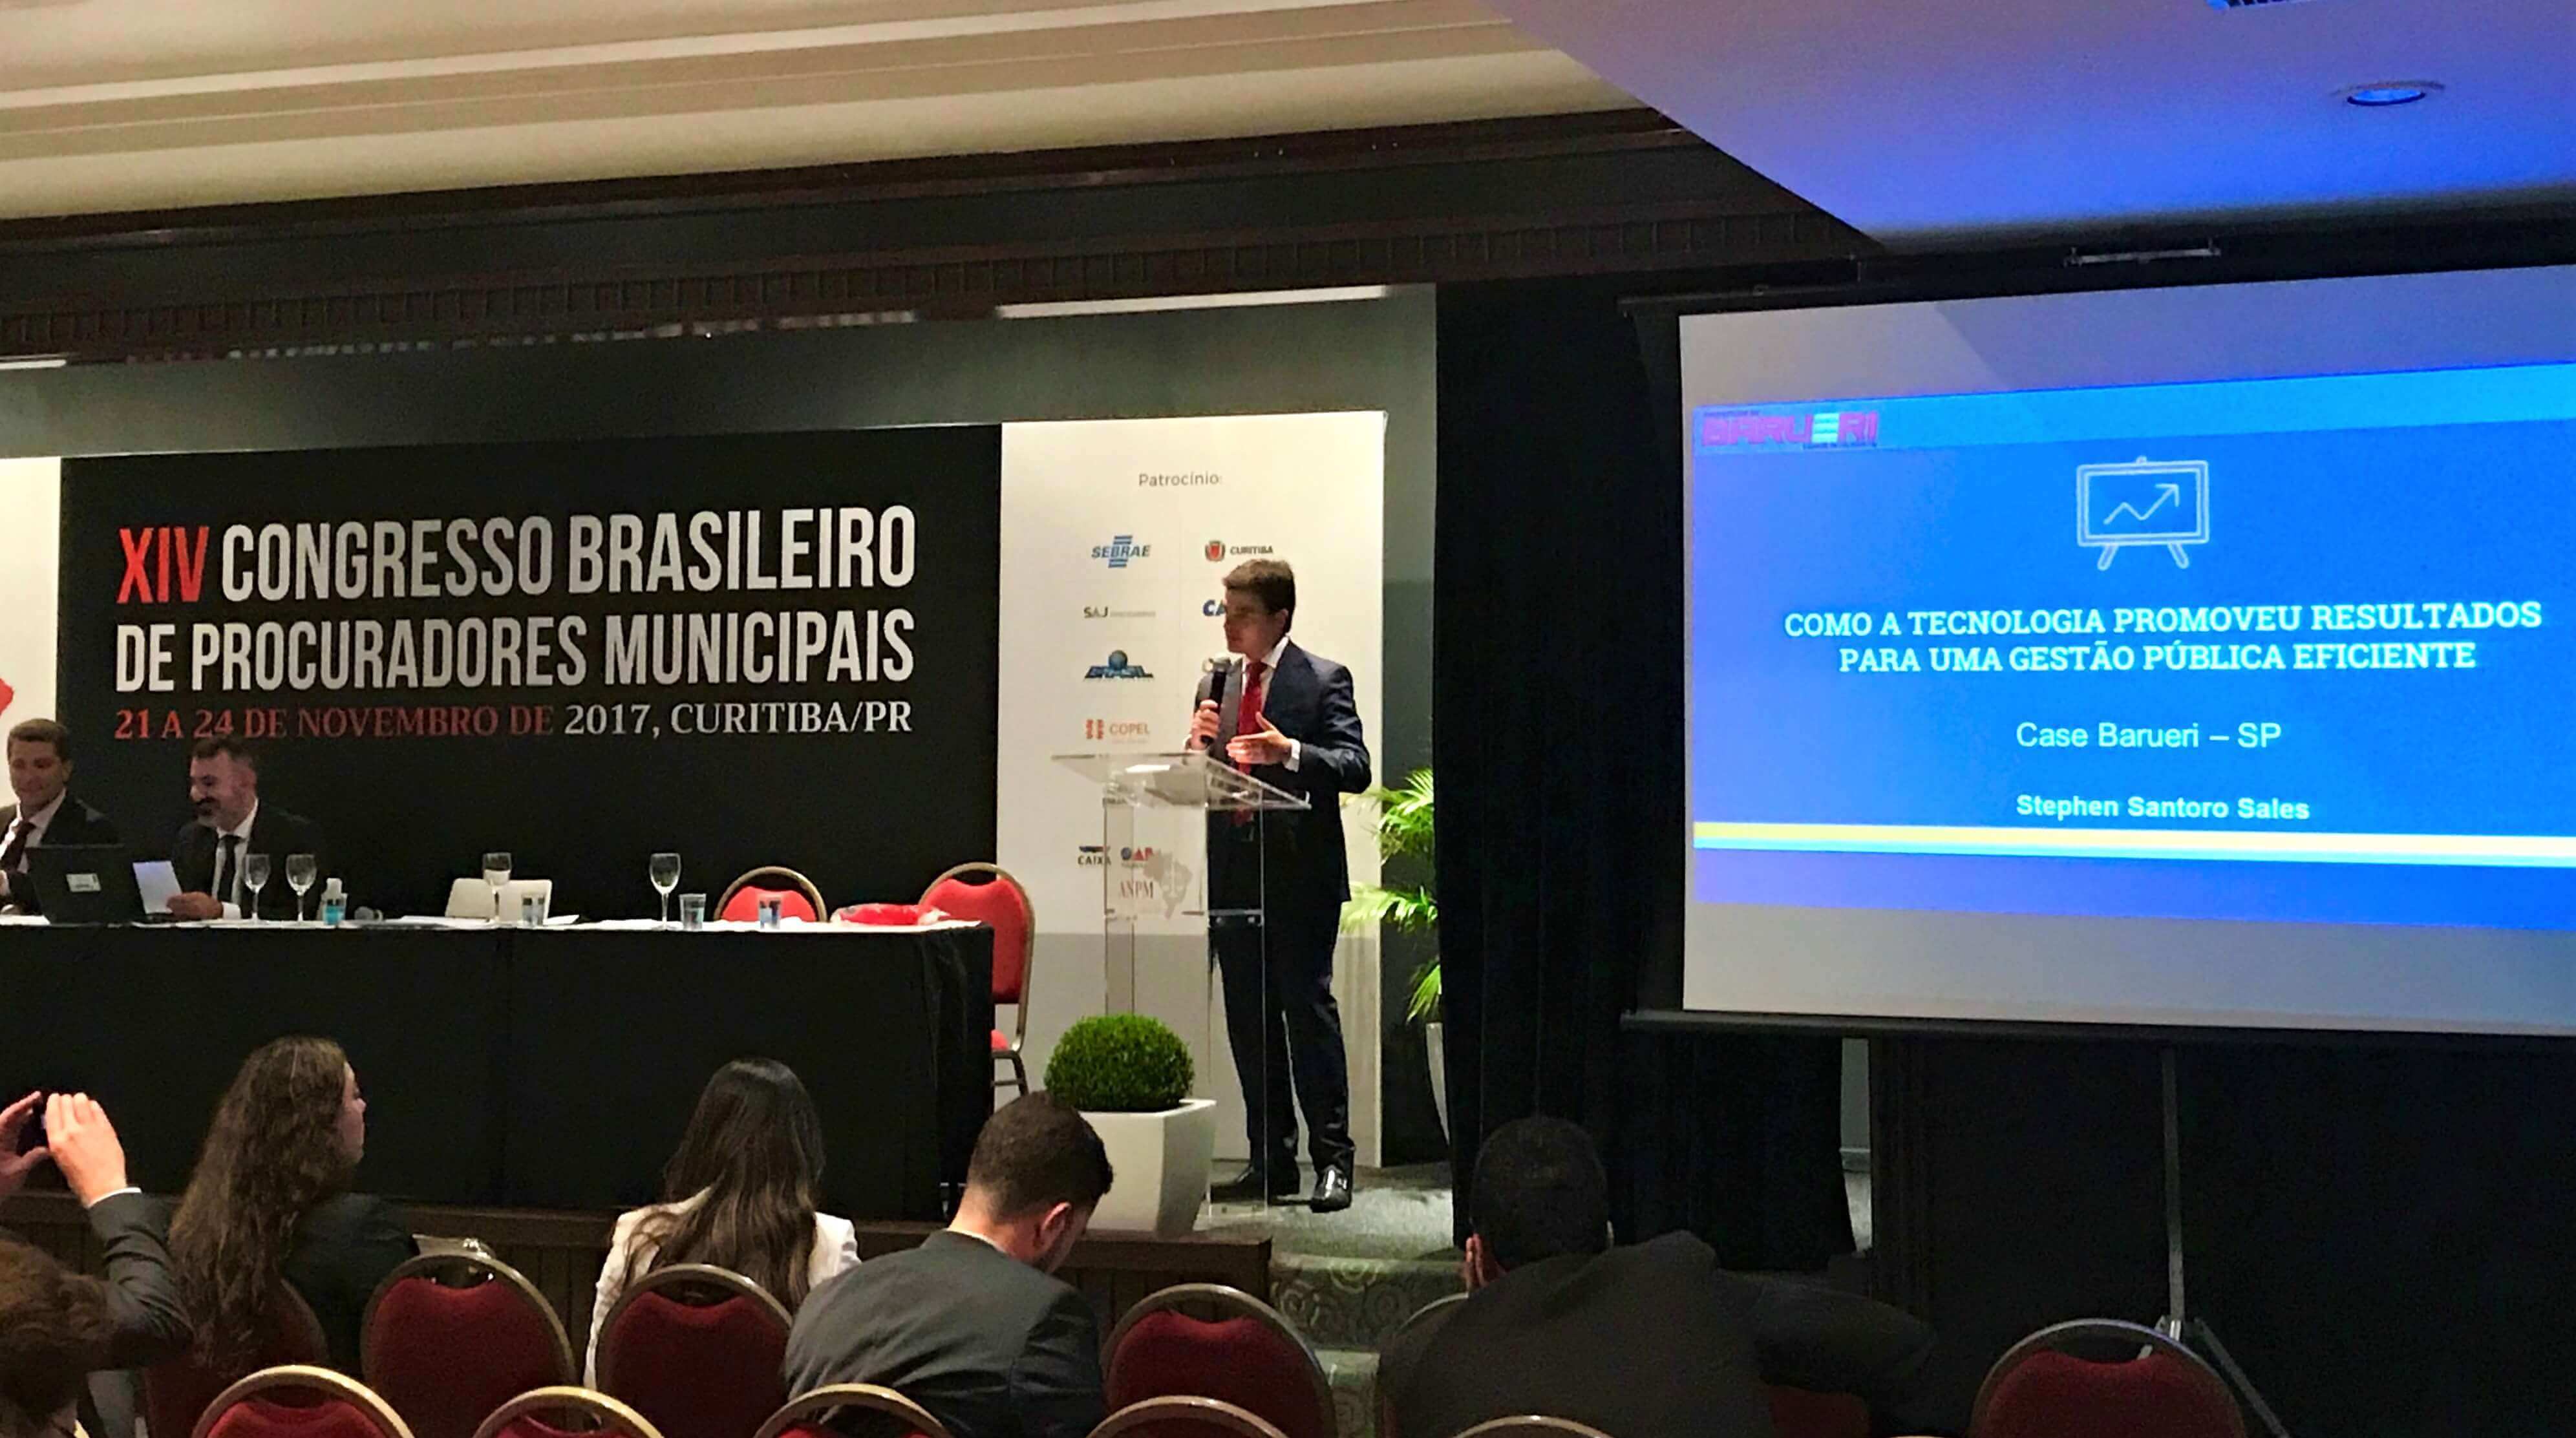 Execução Fiscal municipal - Procurador Stephen Santoro Sales palestra no Congresso Brasileiro de Procuradores Municipais